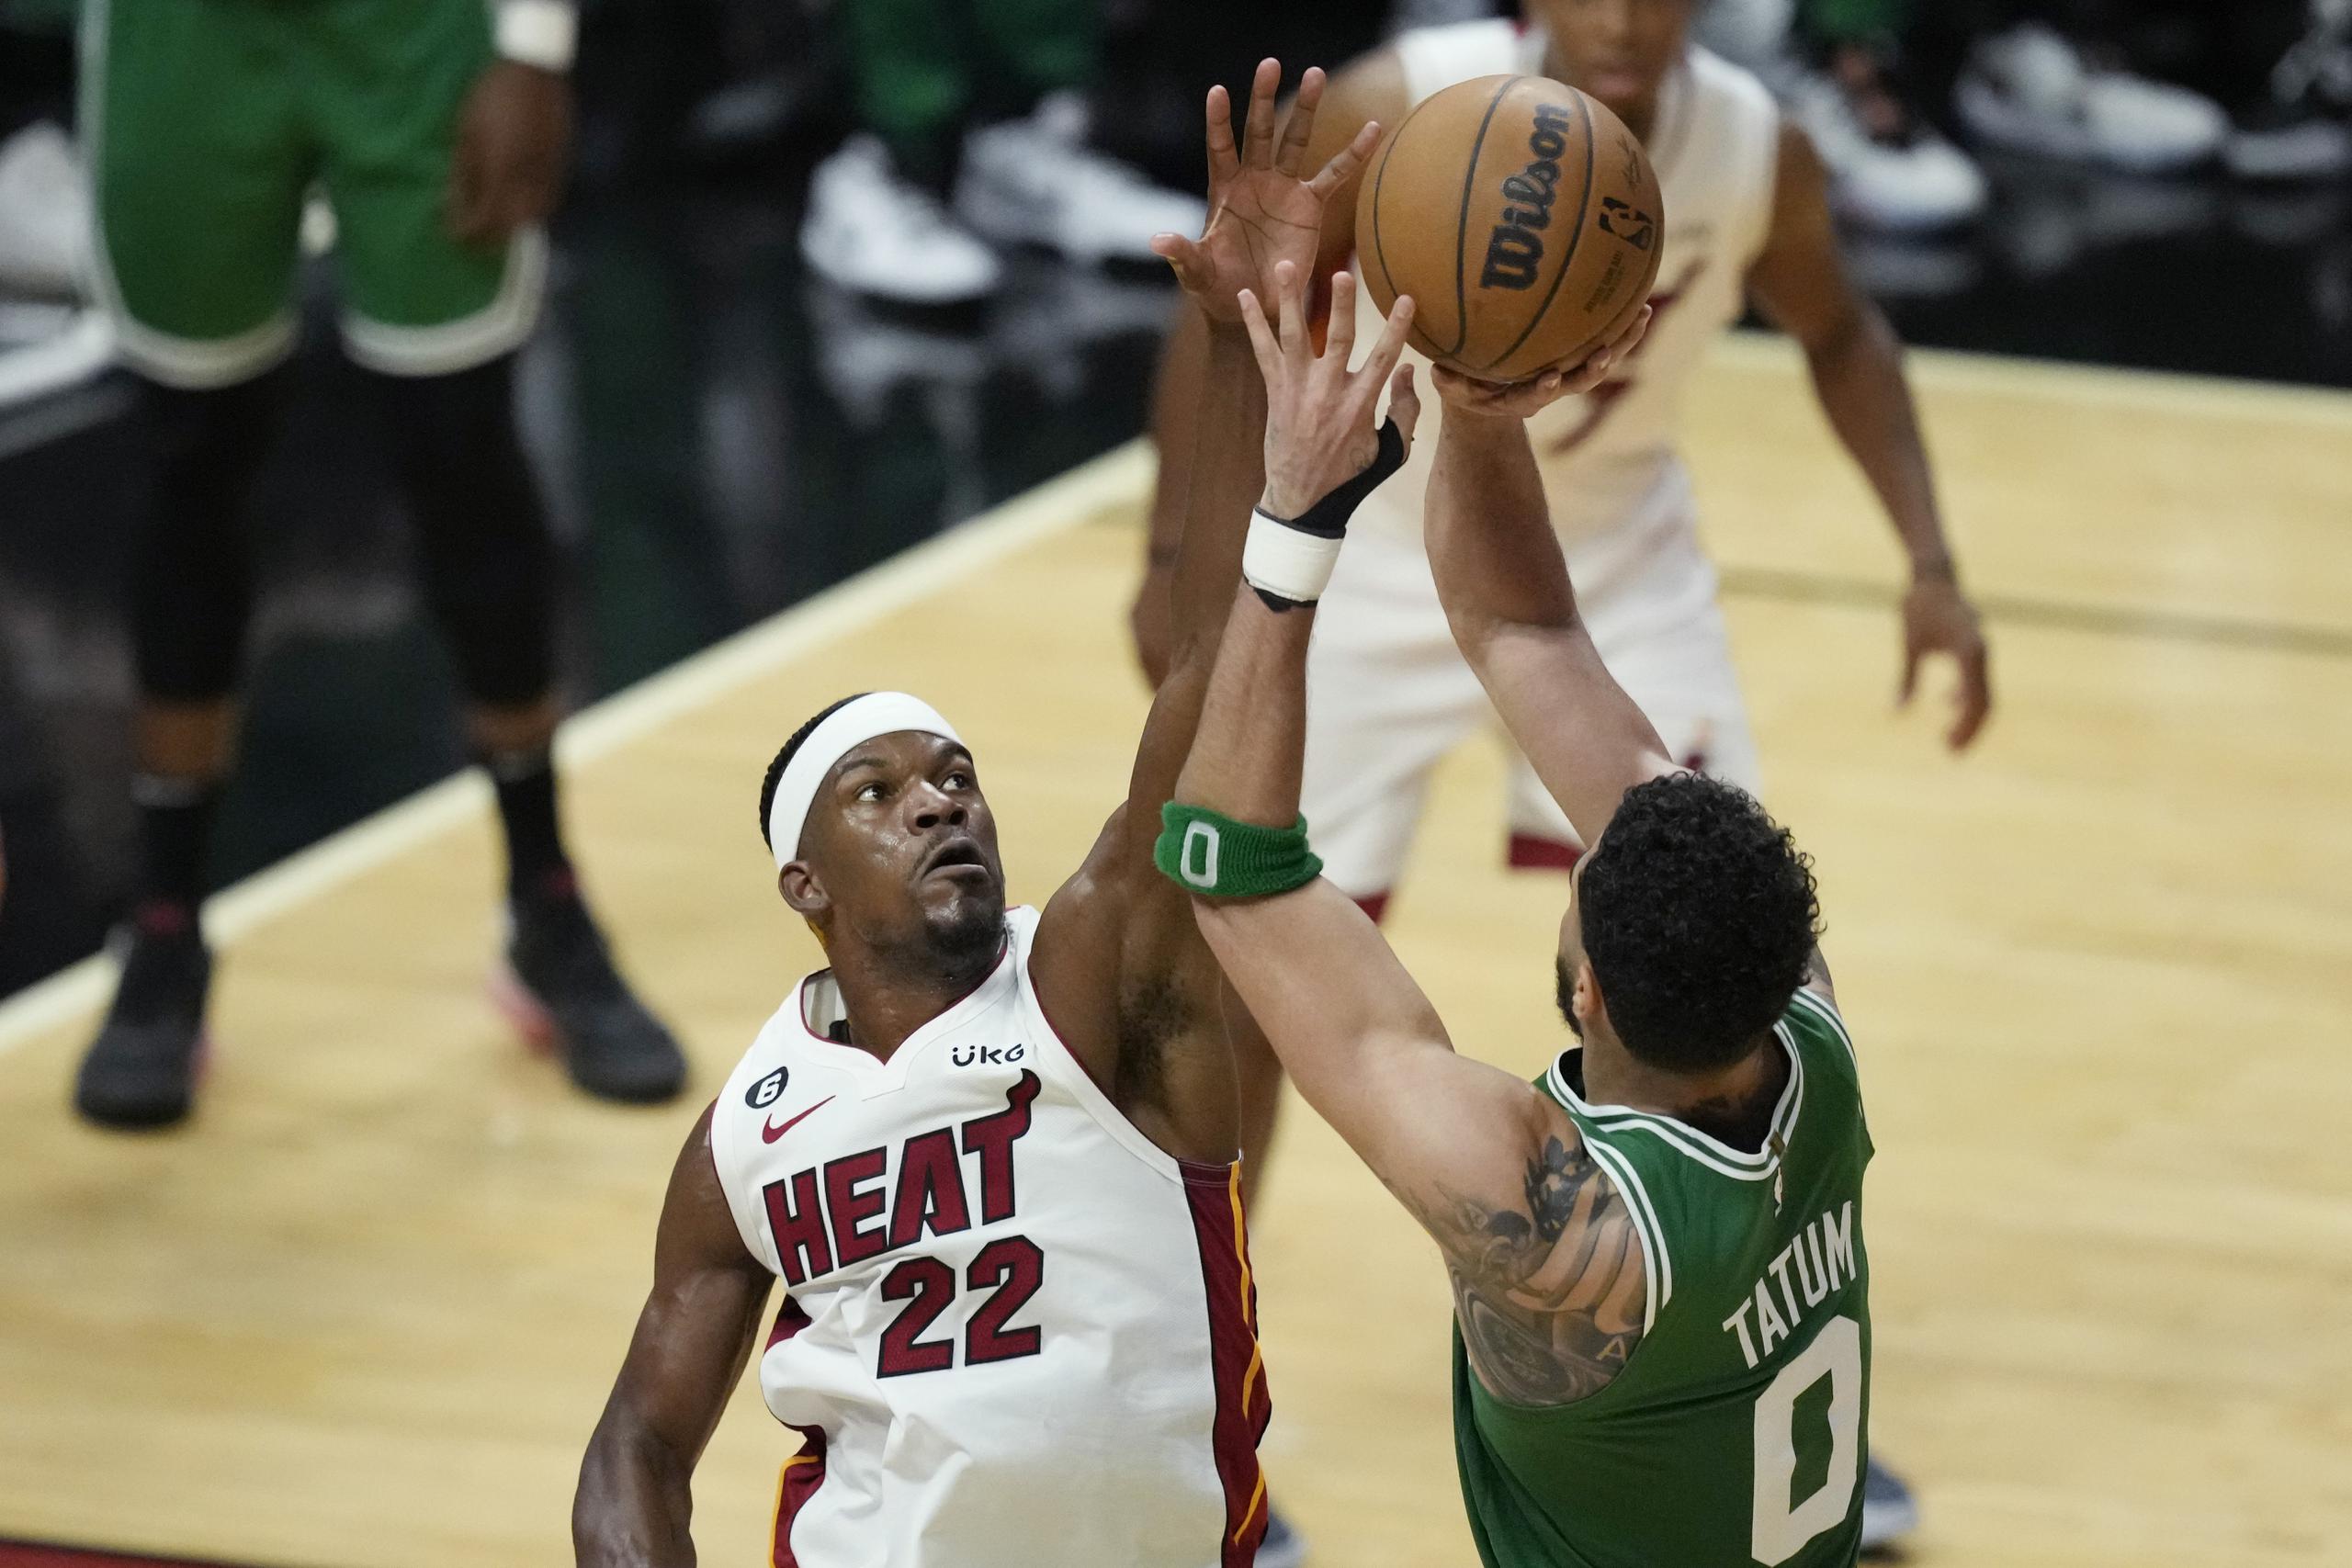 El delantero de los Celtics de Boston, Jayson Tatum, realiza un tiro por encima de la defensa de Jimmy Butler, del Heat de Miami. Tatum fue el mejor del quinto partido de la final del Este de la NBA el martes al finalizar con 33 unidades.